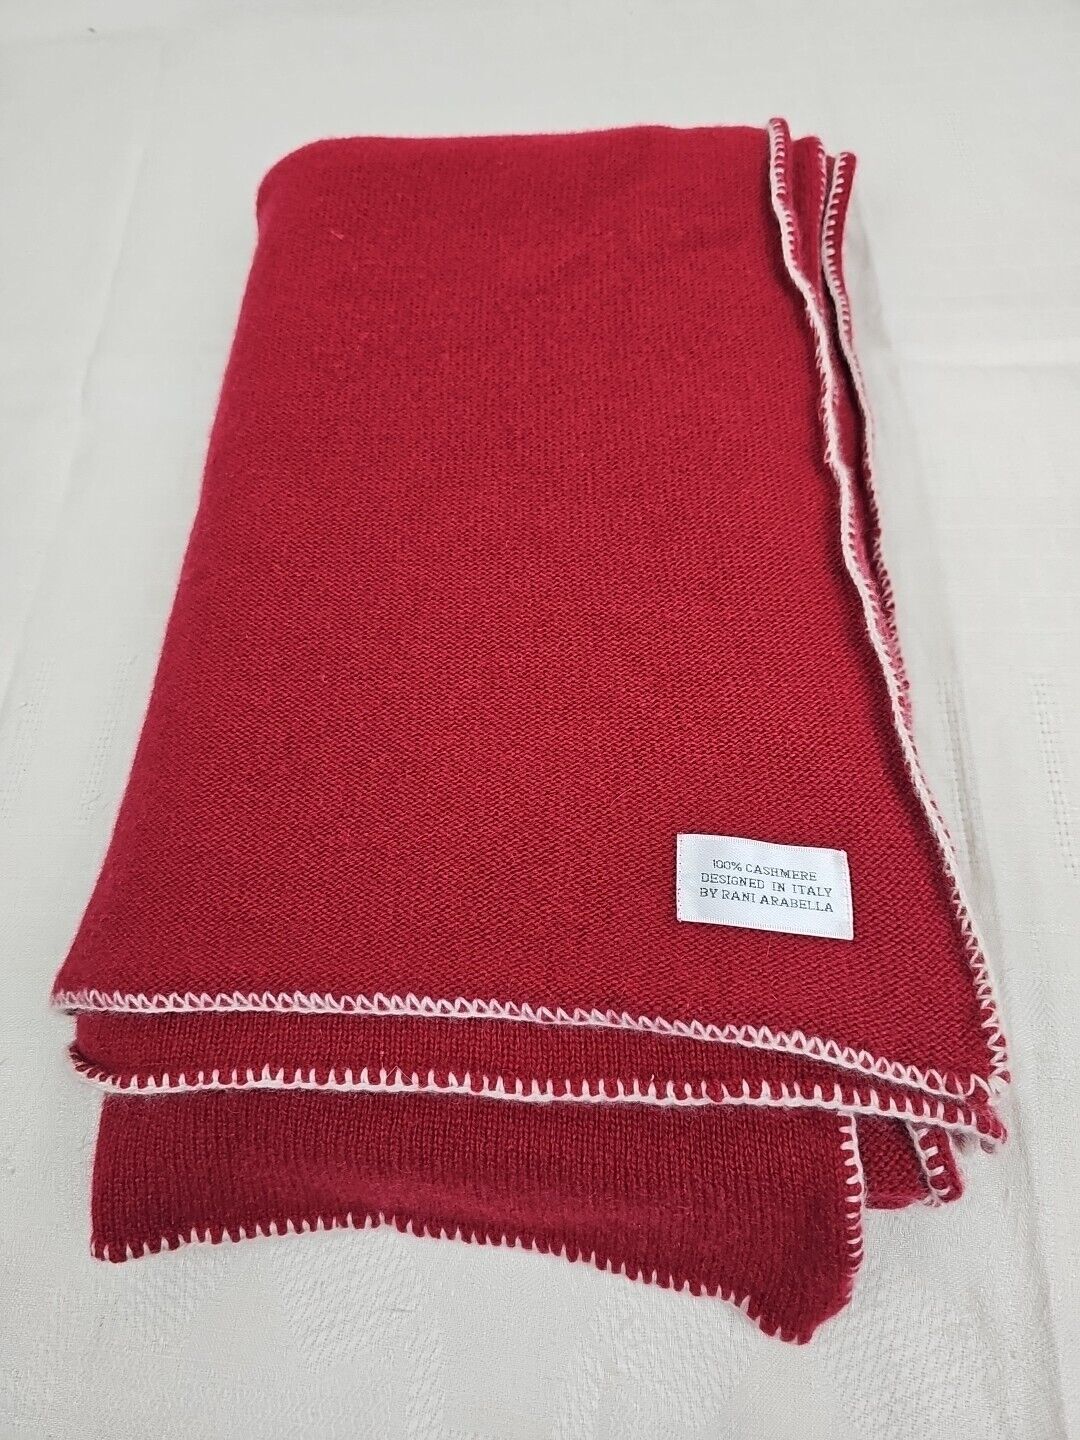 Rani Arabella 100% Cashmere Knit Blanket Vintage 60s 